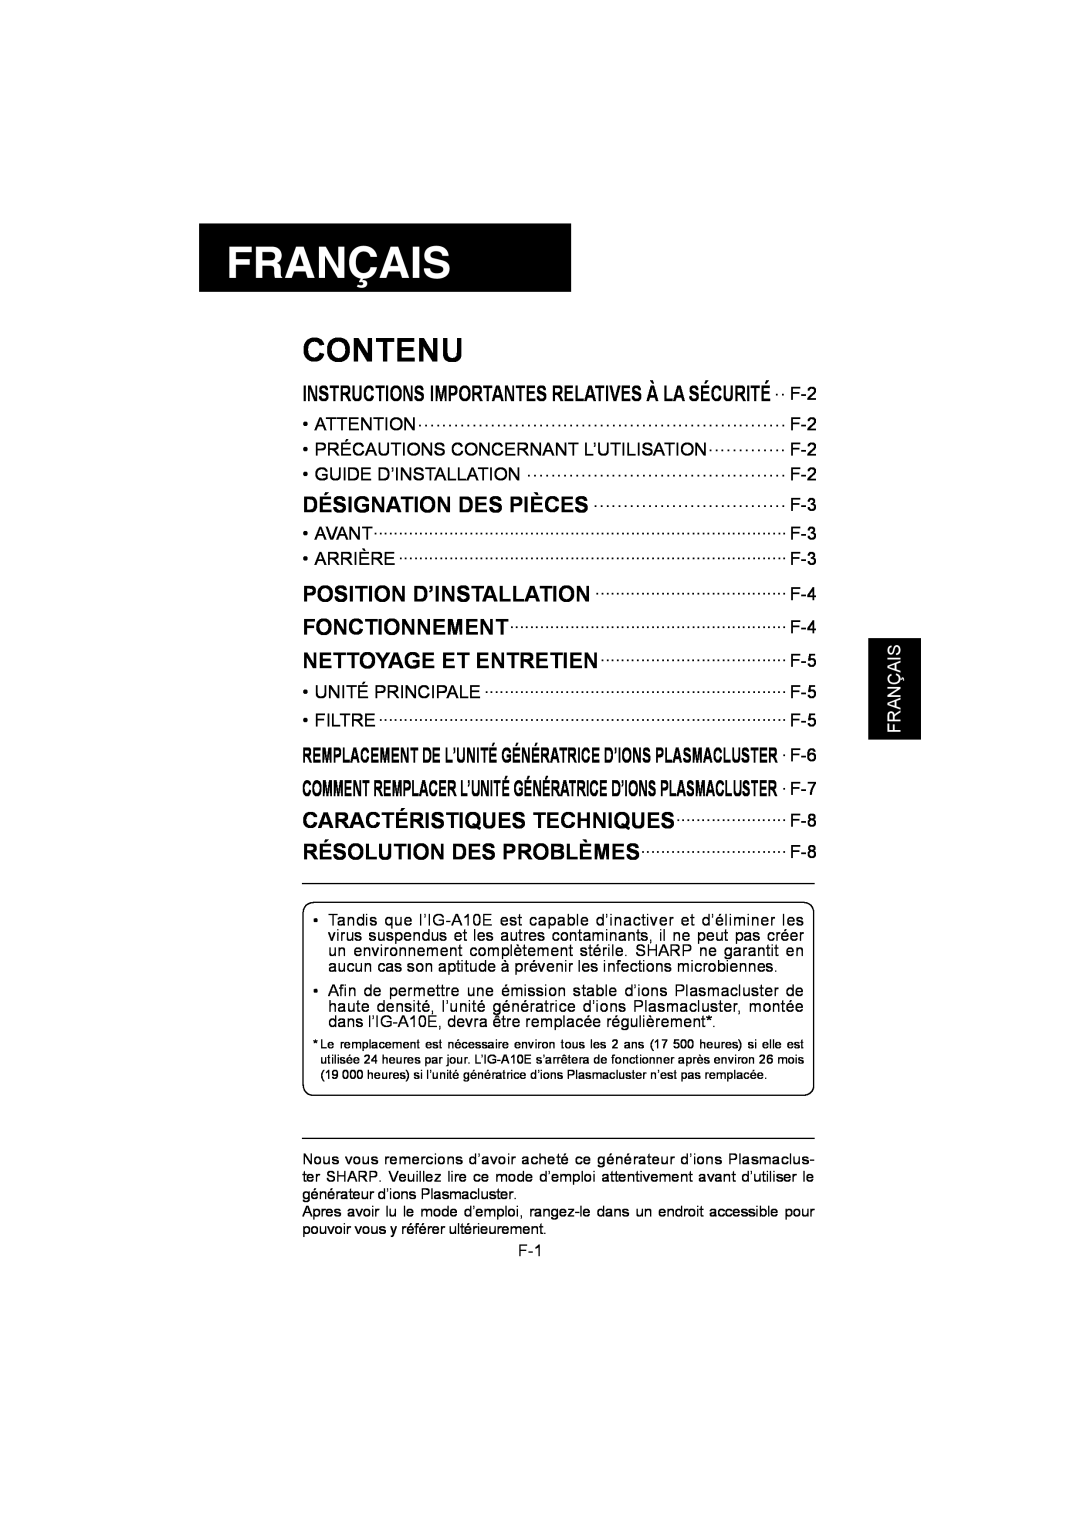 Sharp IG-A10E operation manual Français, Contenu 